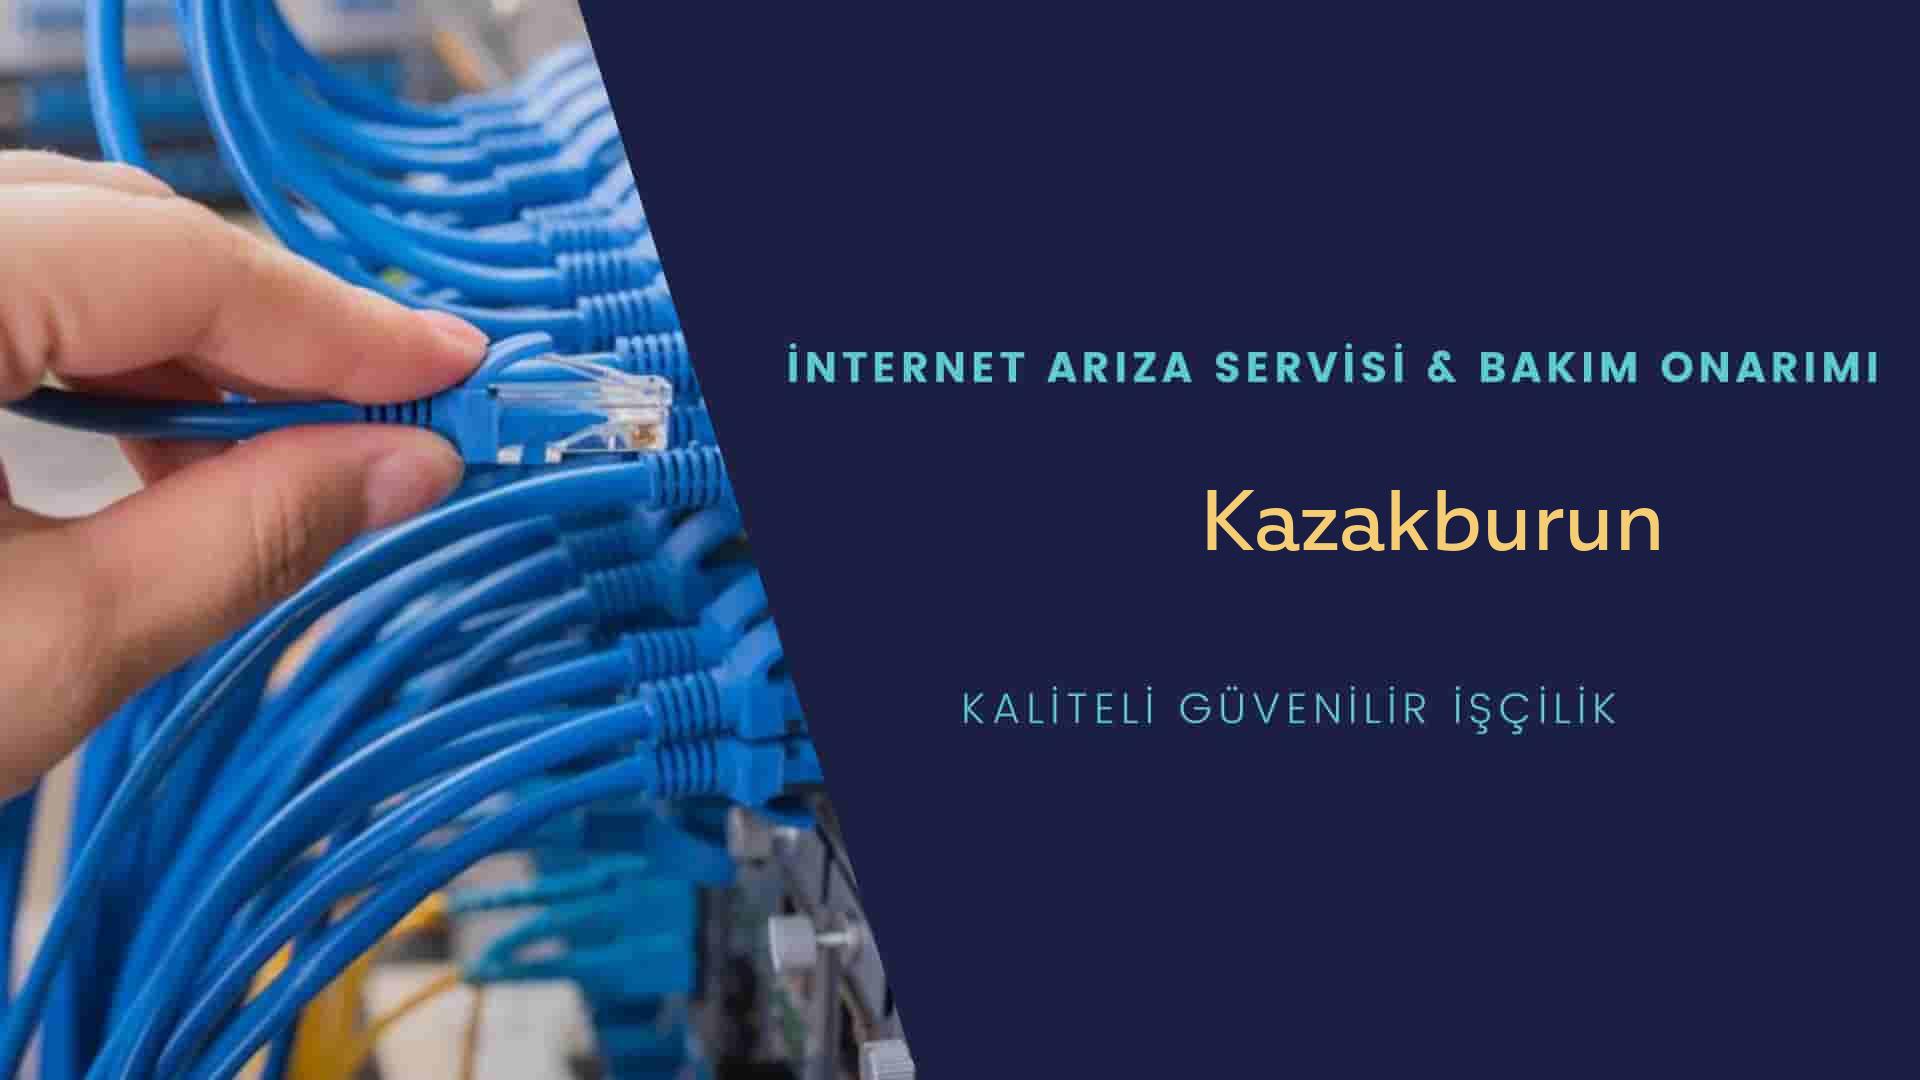 Kazakburun  internet kablosu çekimi yapan yerler veya elektrikçiler mi? arıyorsunuz doğru yerdesiniz o zaman sizlere 7/24 yardımcı olacak profesyonel ustalarımız bir telefon kadar yakındır size.